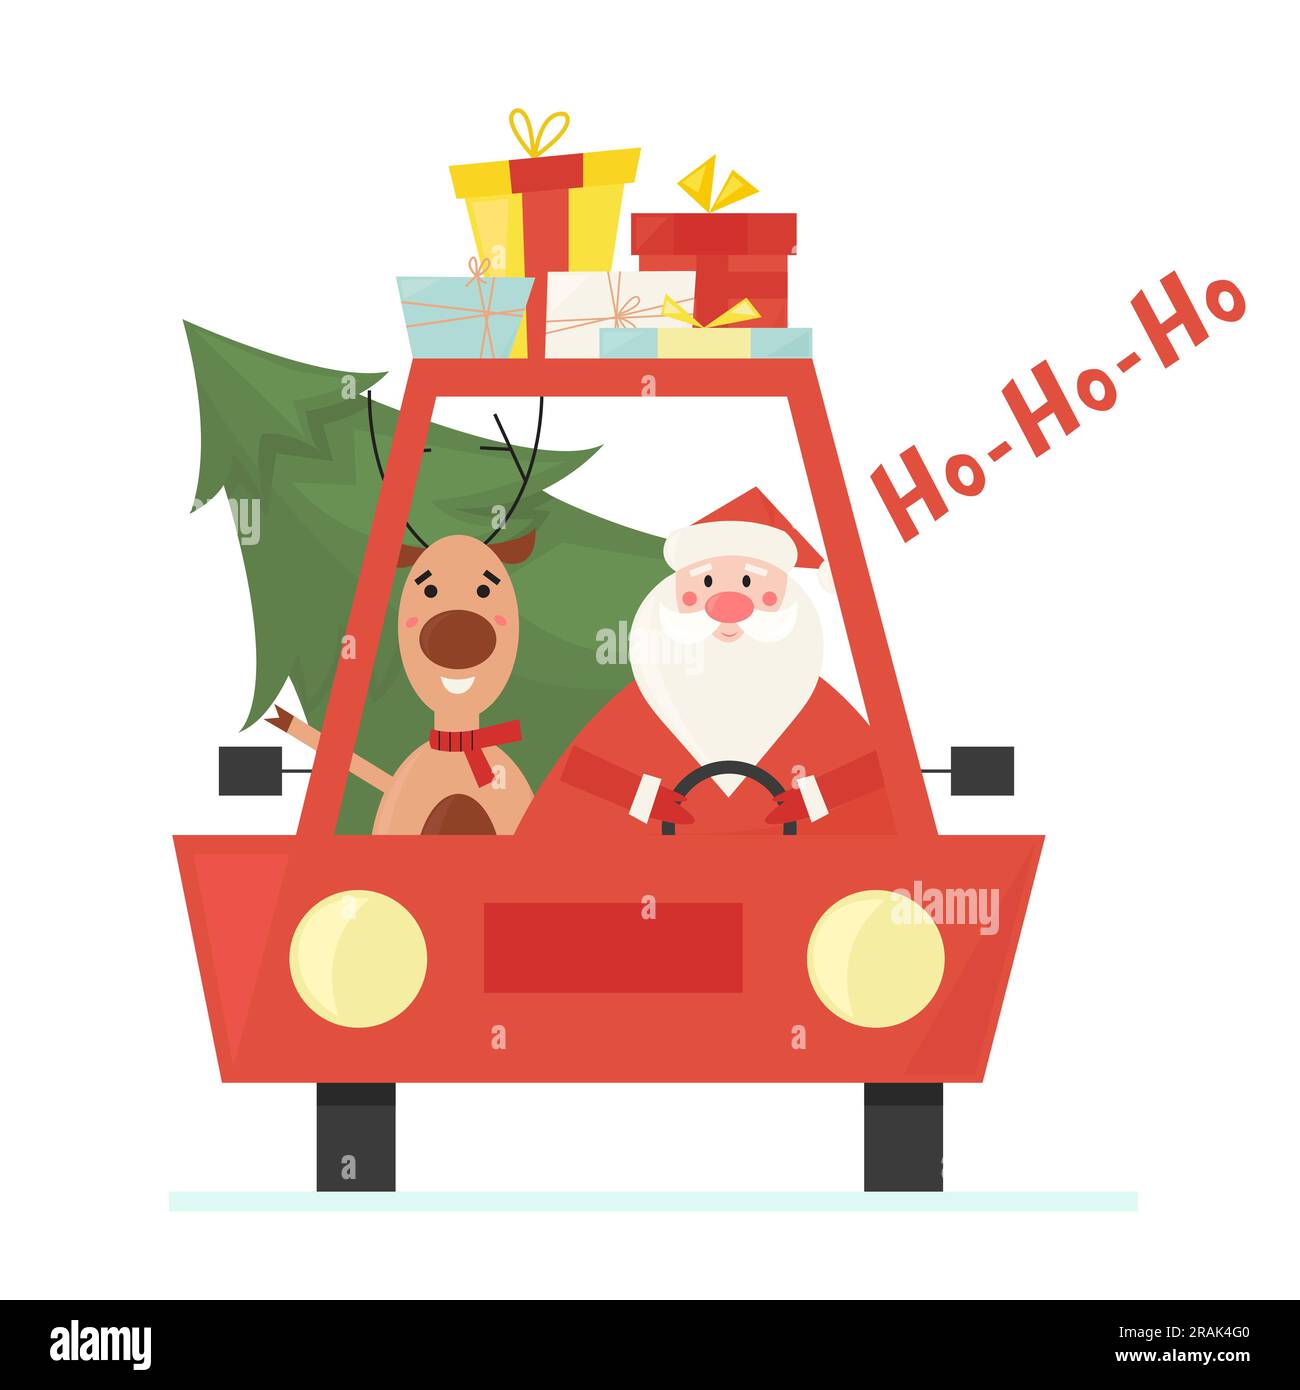 Der süße Weihnachtsmann mit seinem Hirsch, das Auto fährt und Weihnachtsbaum und Geschenke liefert. Flache Vektordarstellung für Design- und Grußkarten. Stock Vektor